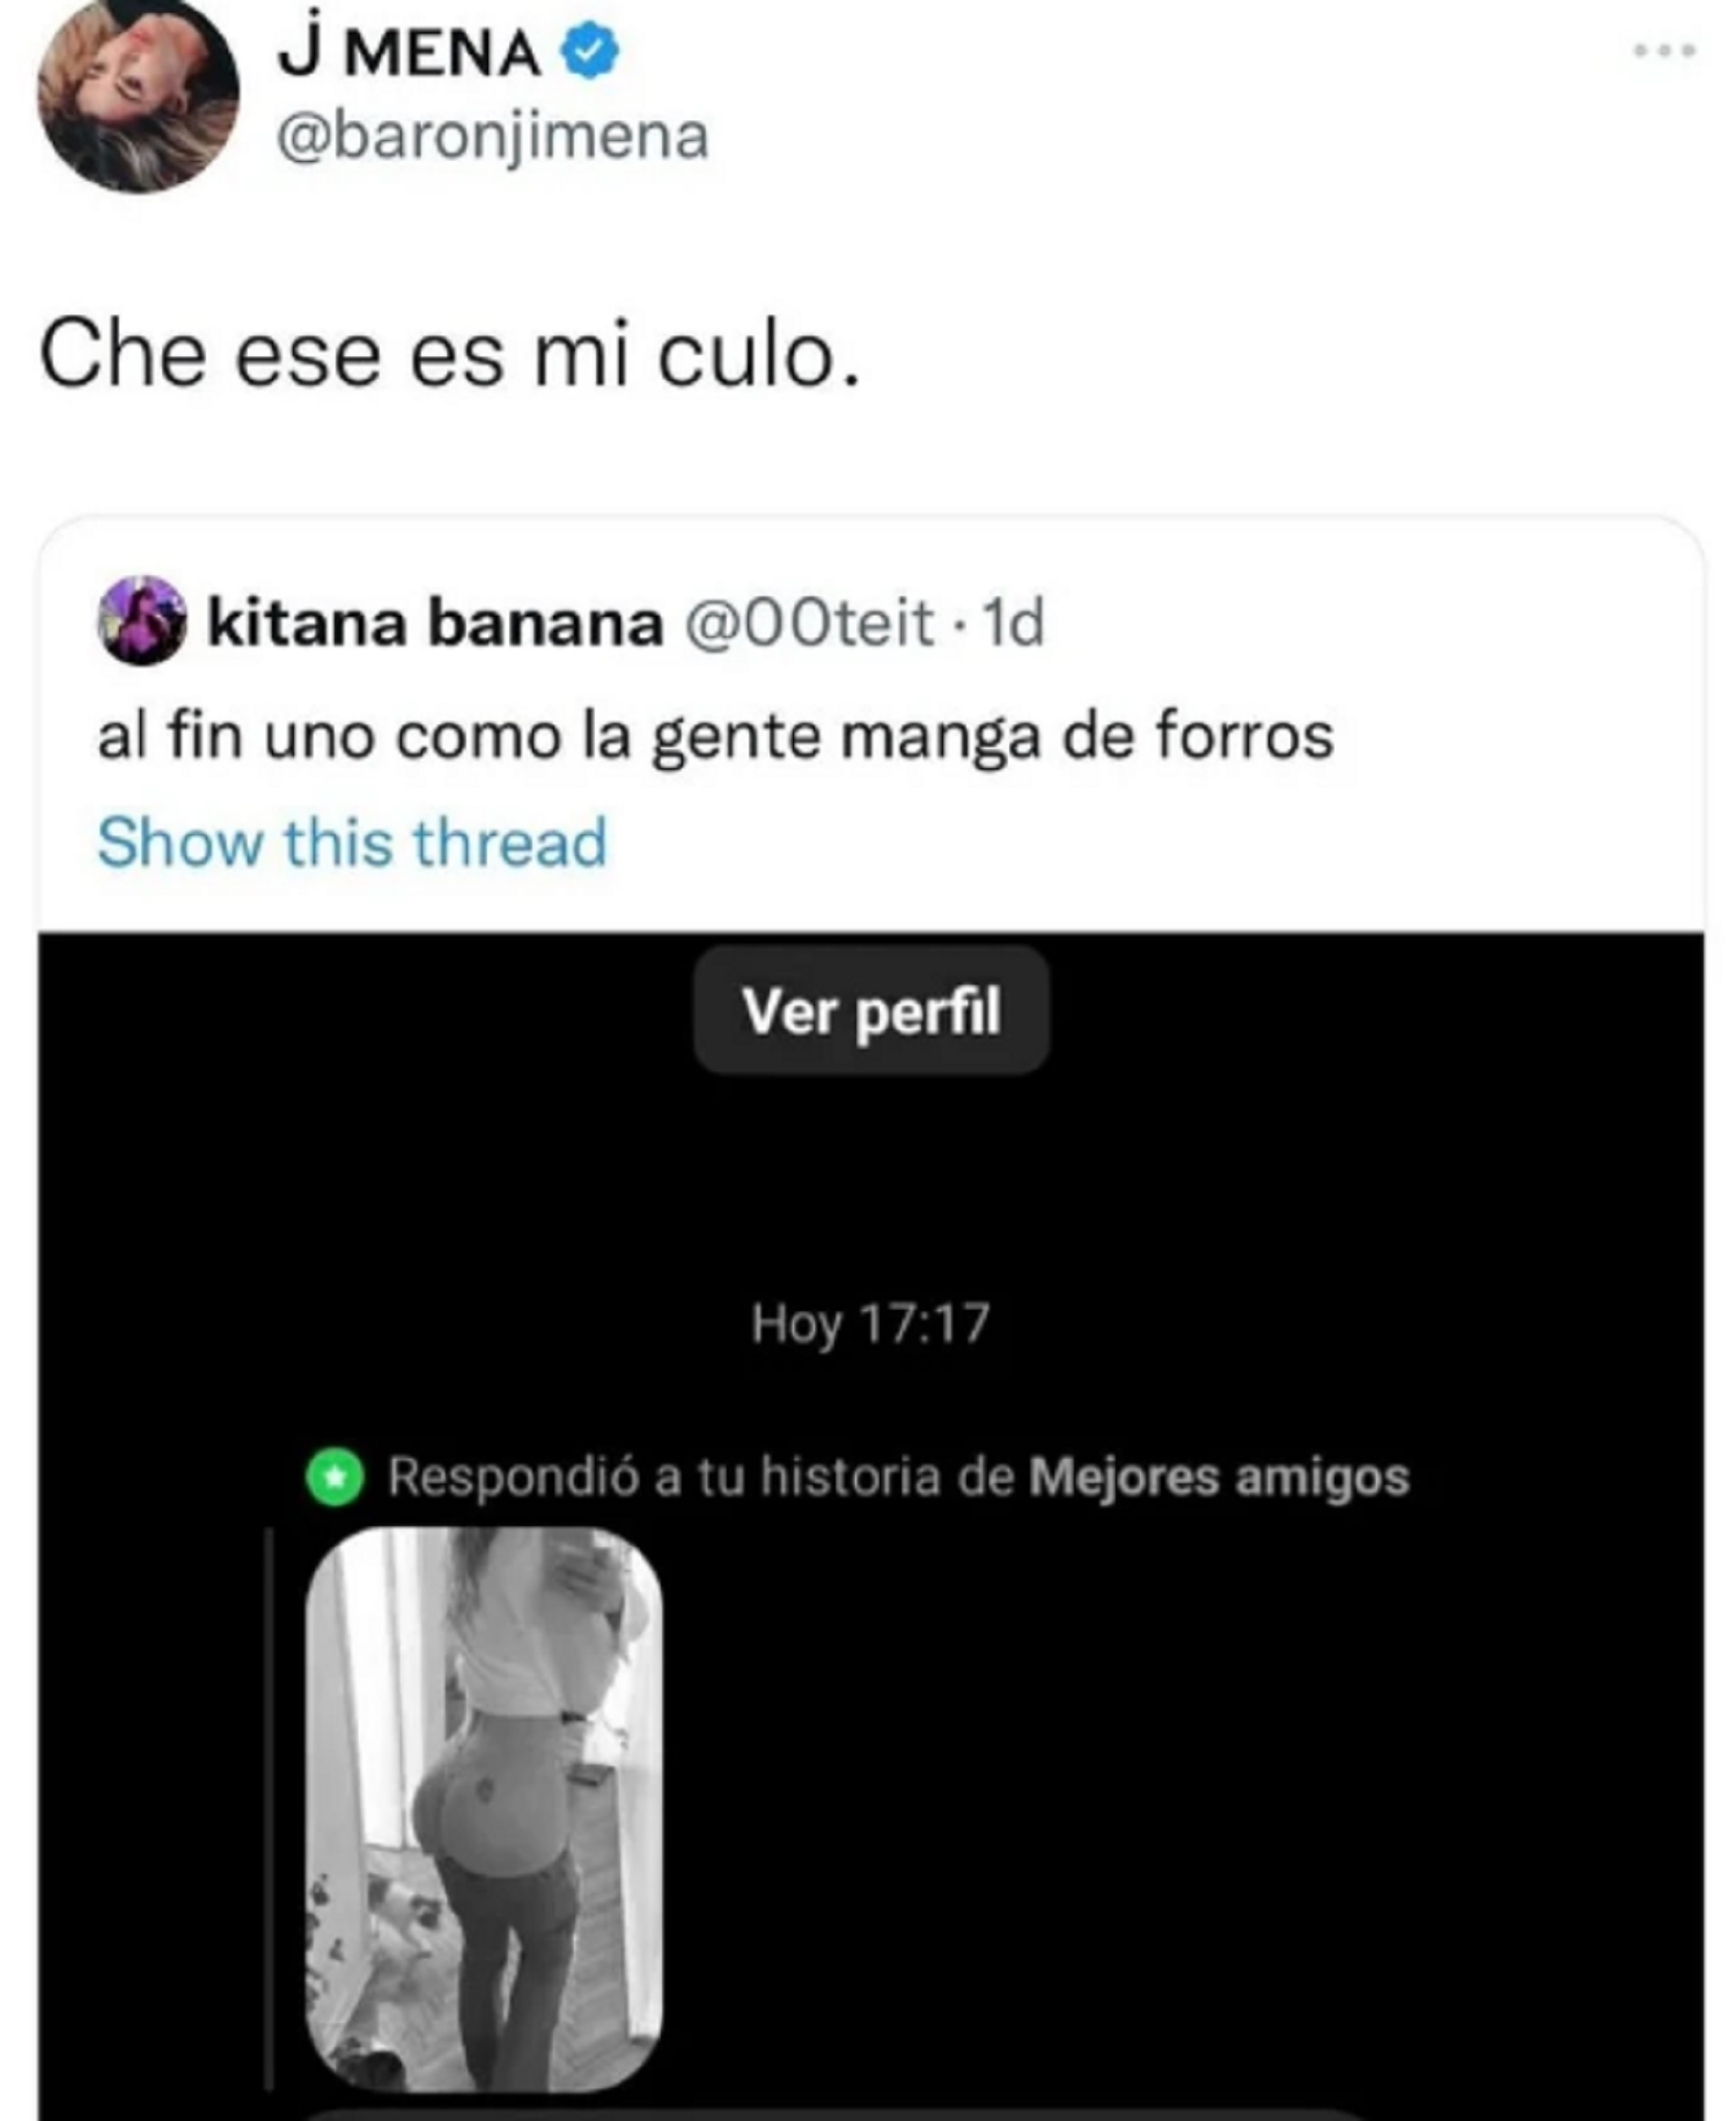 La reacción de Jimena Barón al ver una foto suya casi desnuda en una charla  viral - Infobae